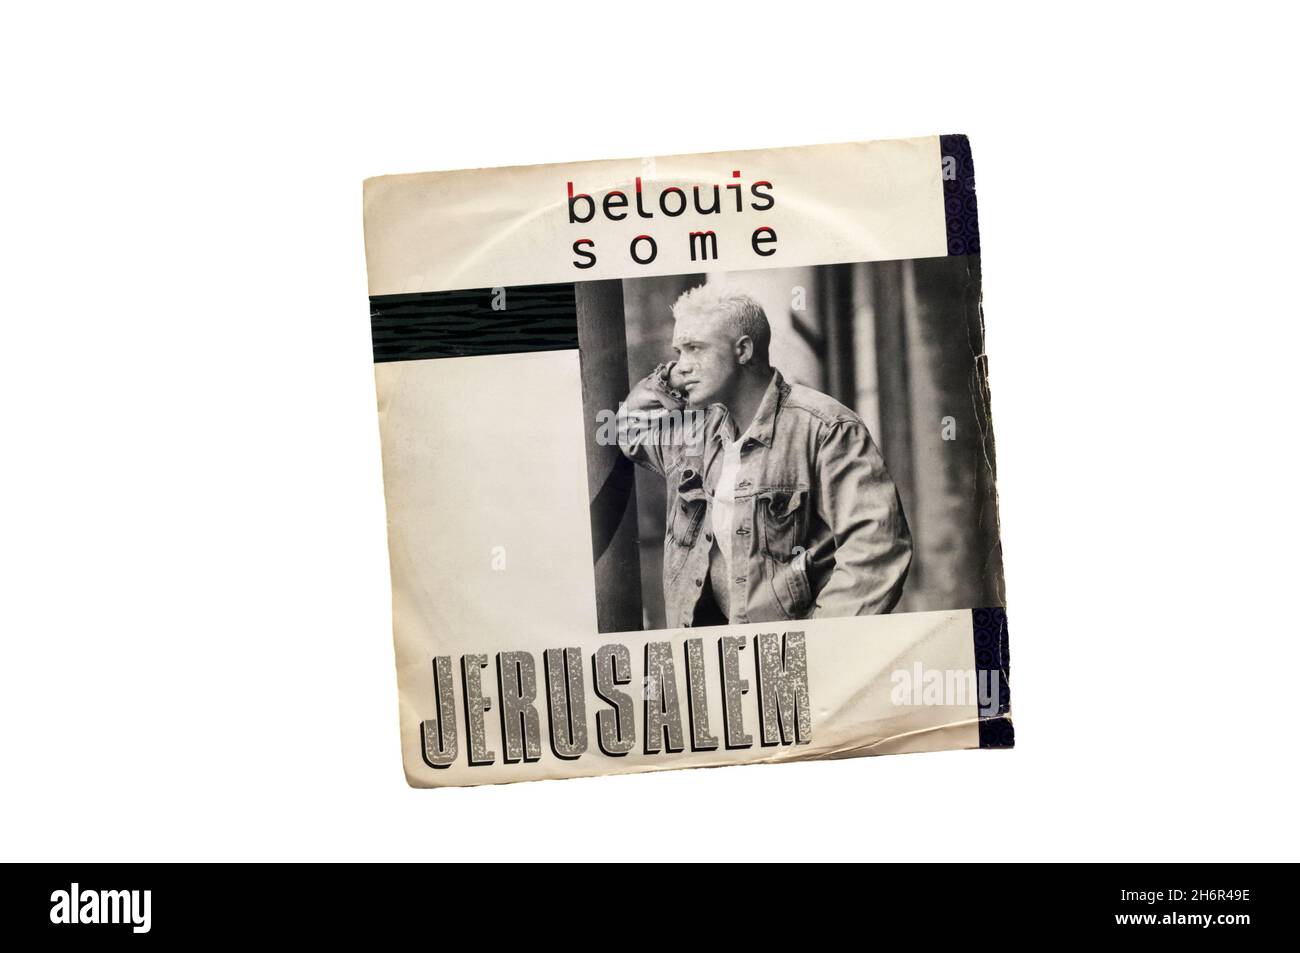 Quarto e ultimo singolo dell'artista britannico Belouis Some, pubblicato nel 1986 dall'album di debutto di alcune persone. Foto Stock